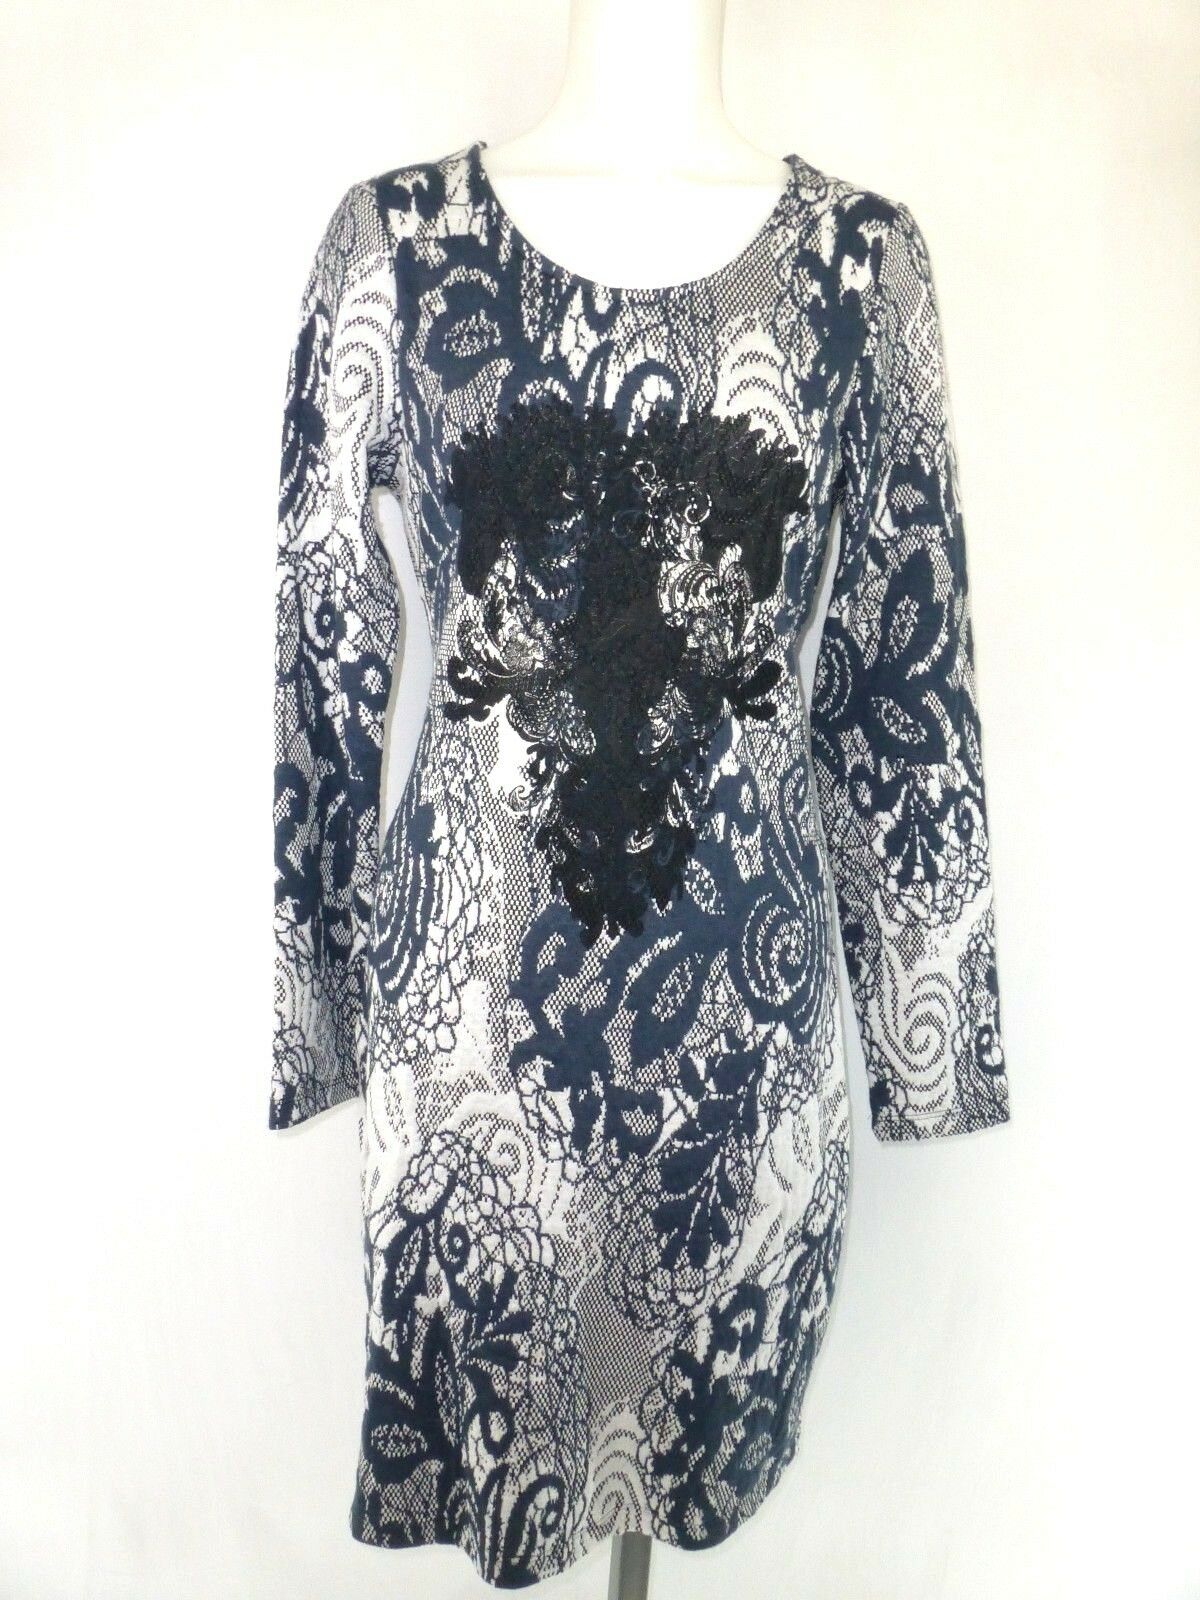 Cream Damen Kleid Lucinda Shirtkleid Gr M 38 Muster Blau Weiß Schwarz Np 90 Neu